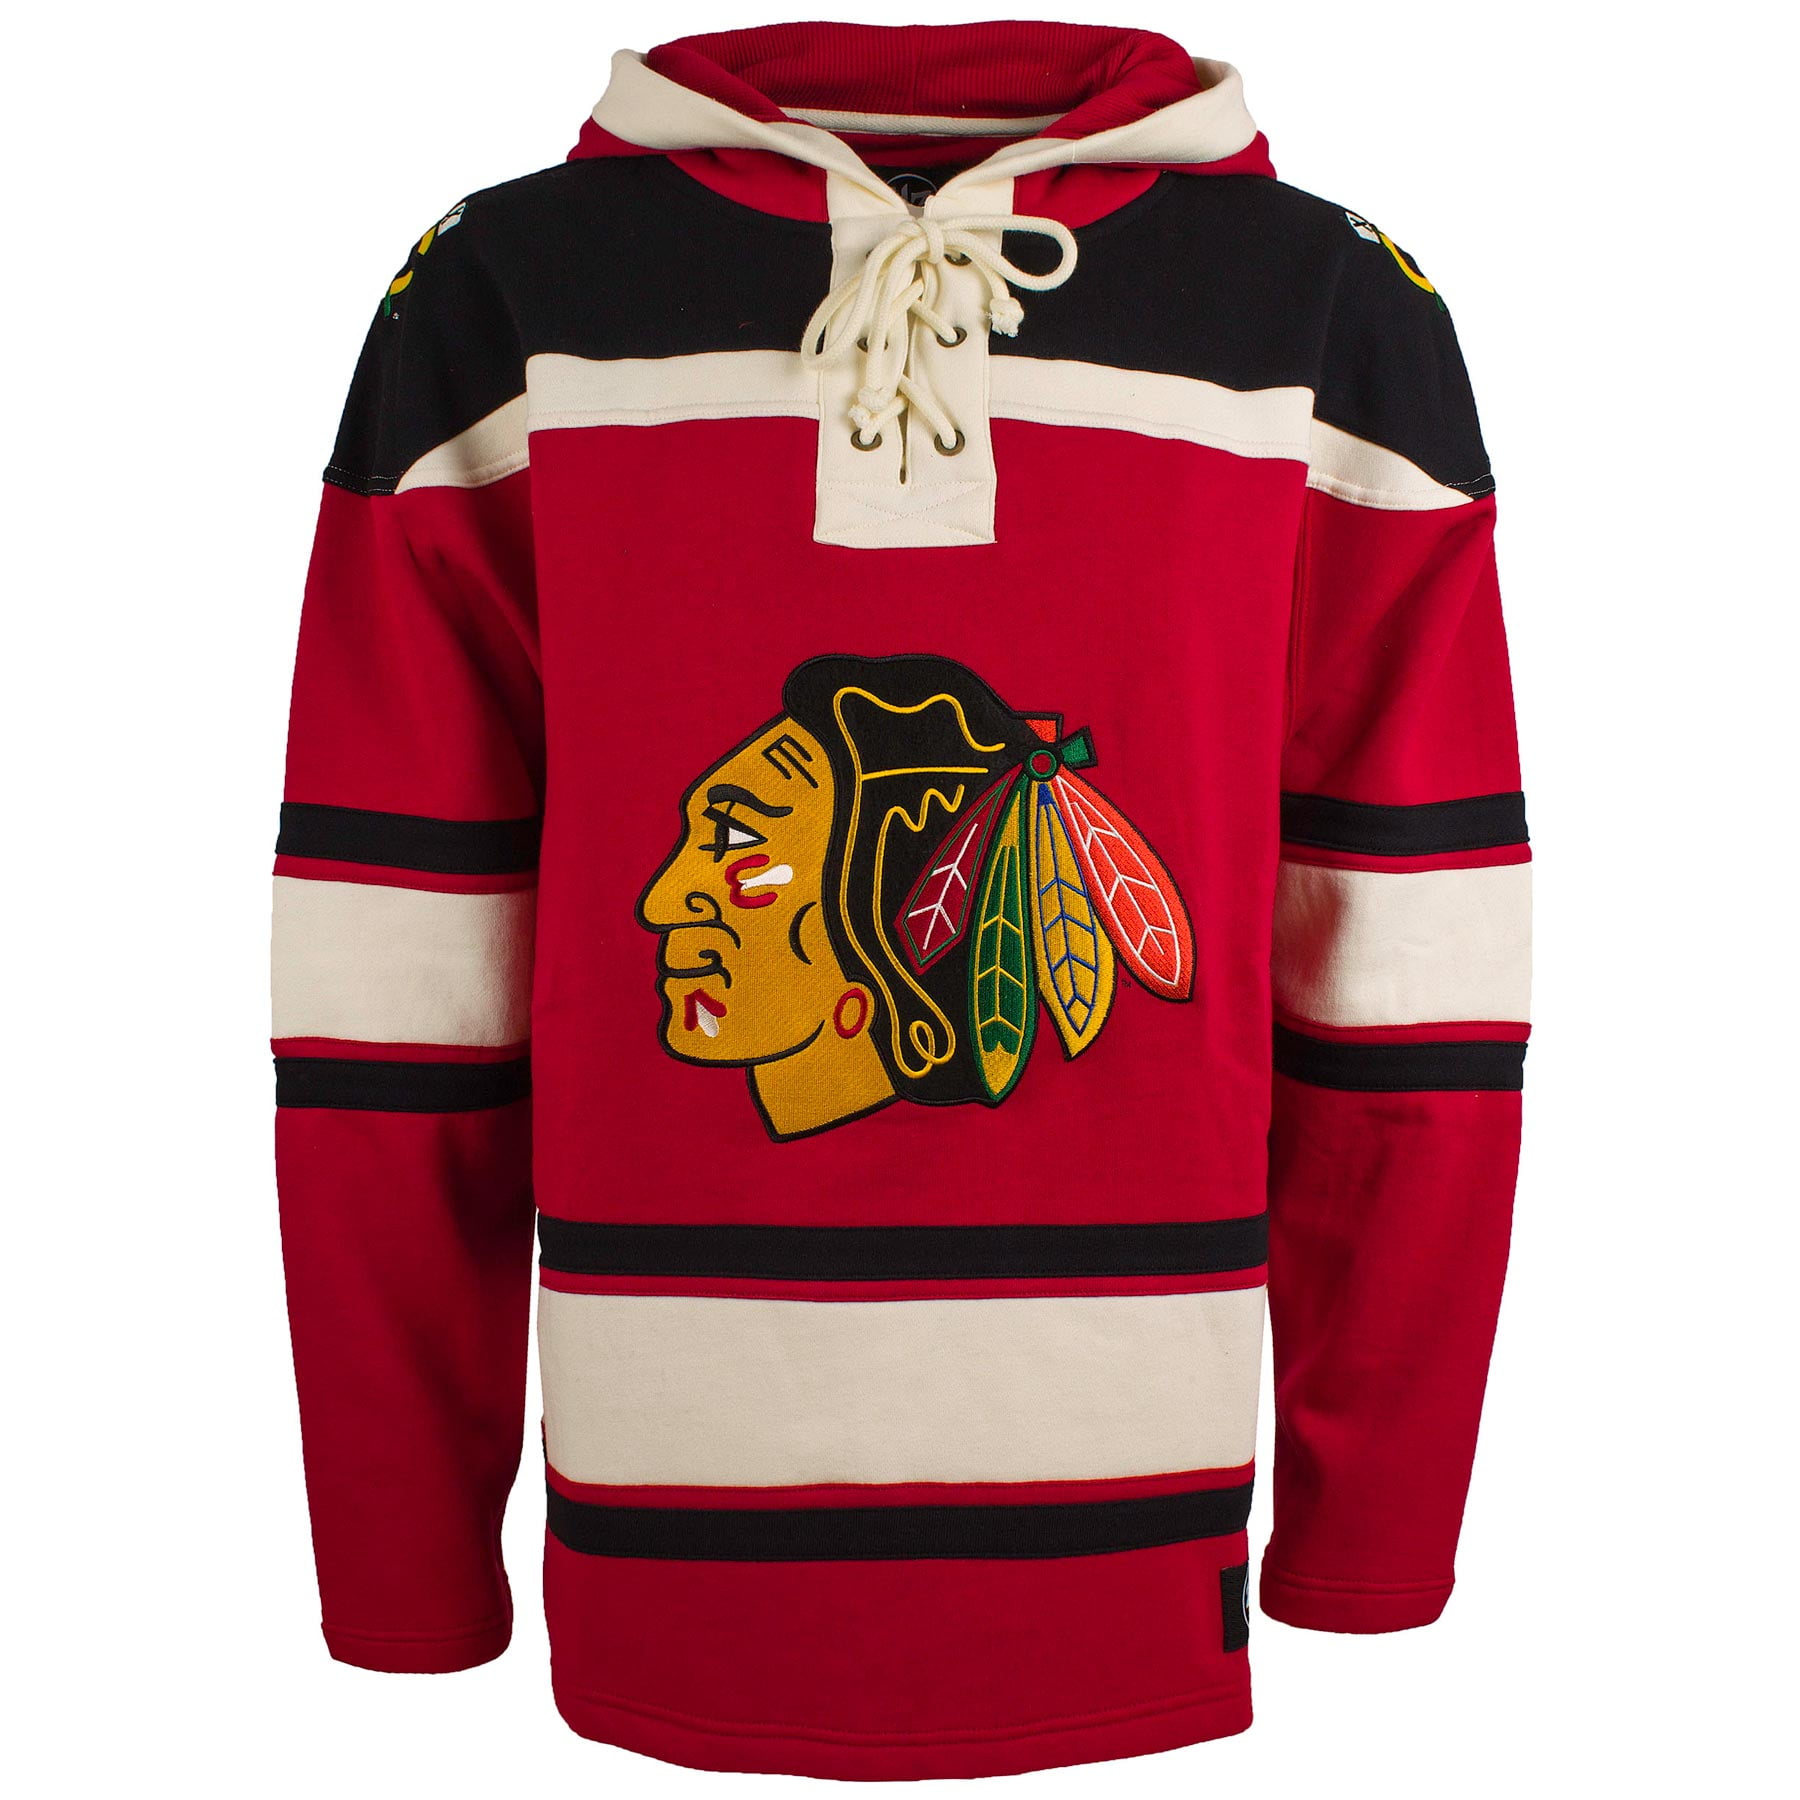 chicago blackhawks hockey hoodie